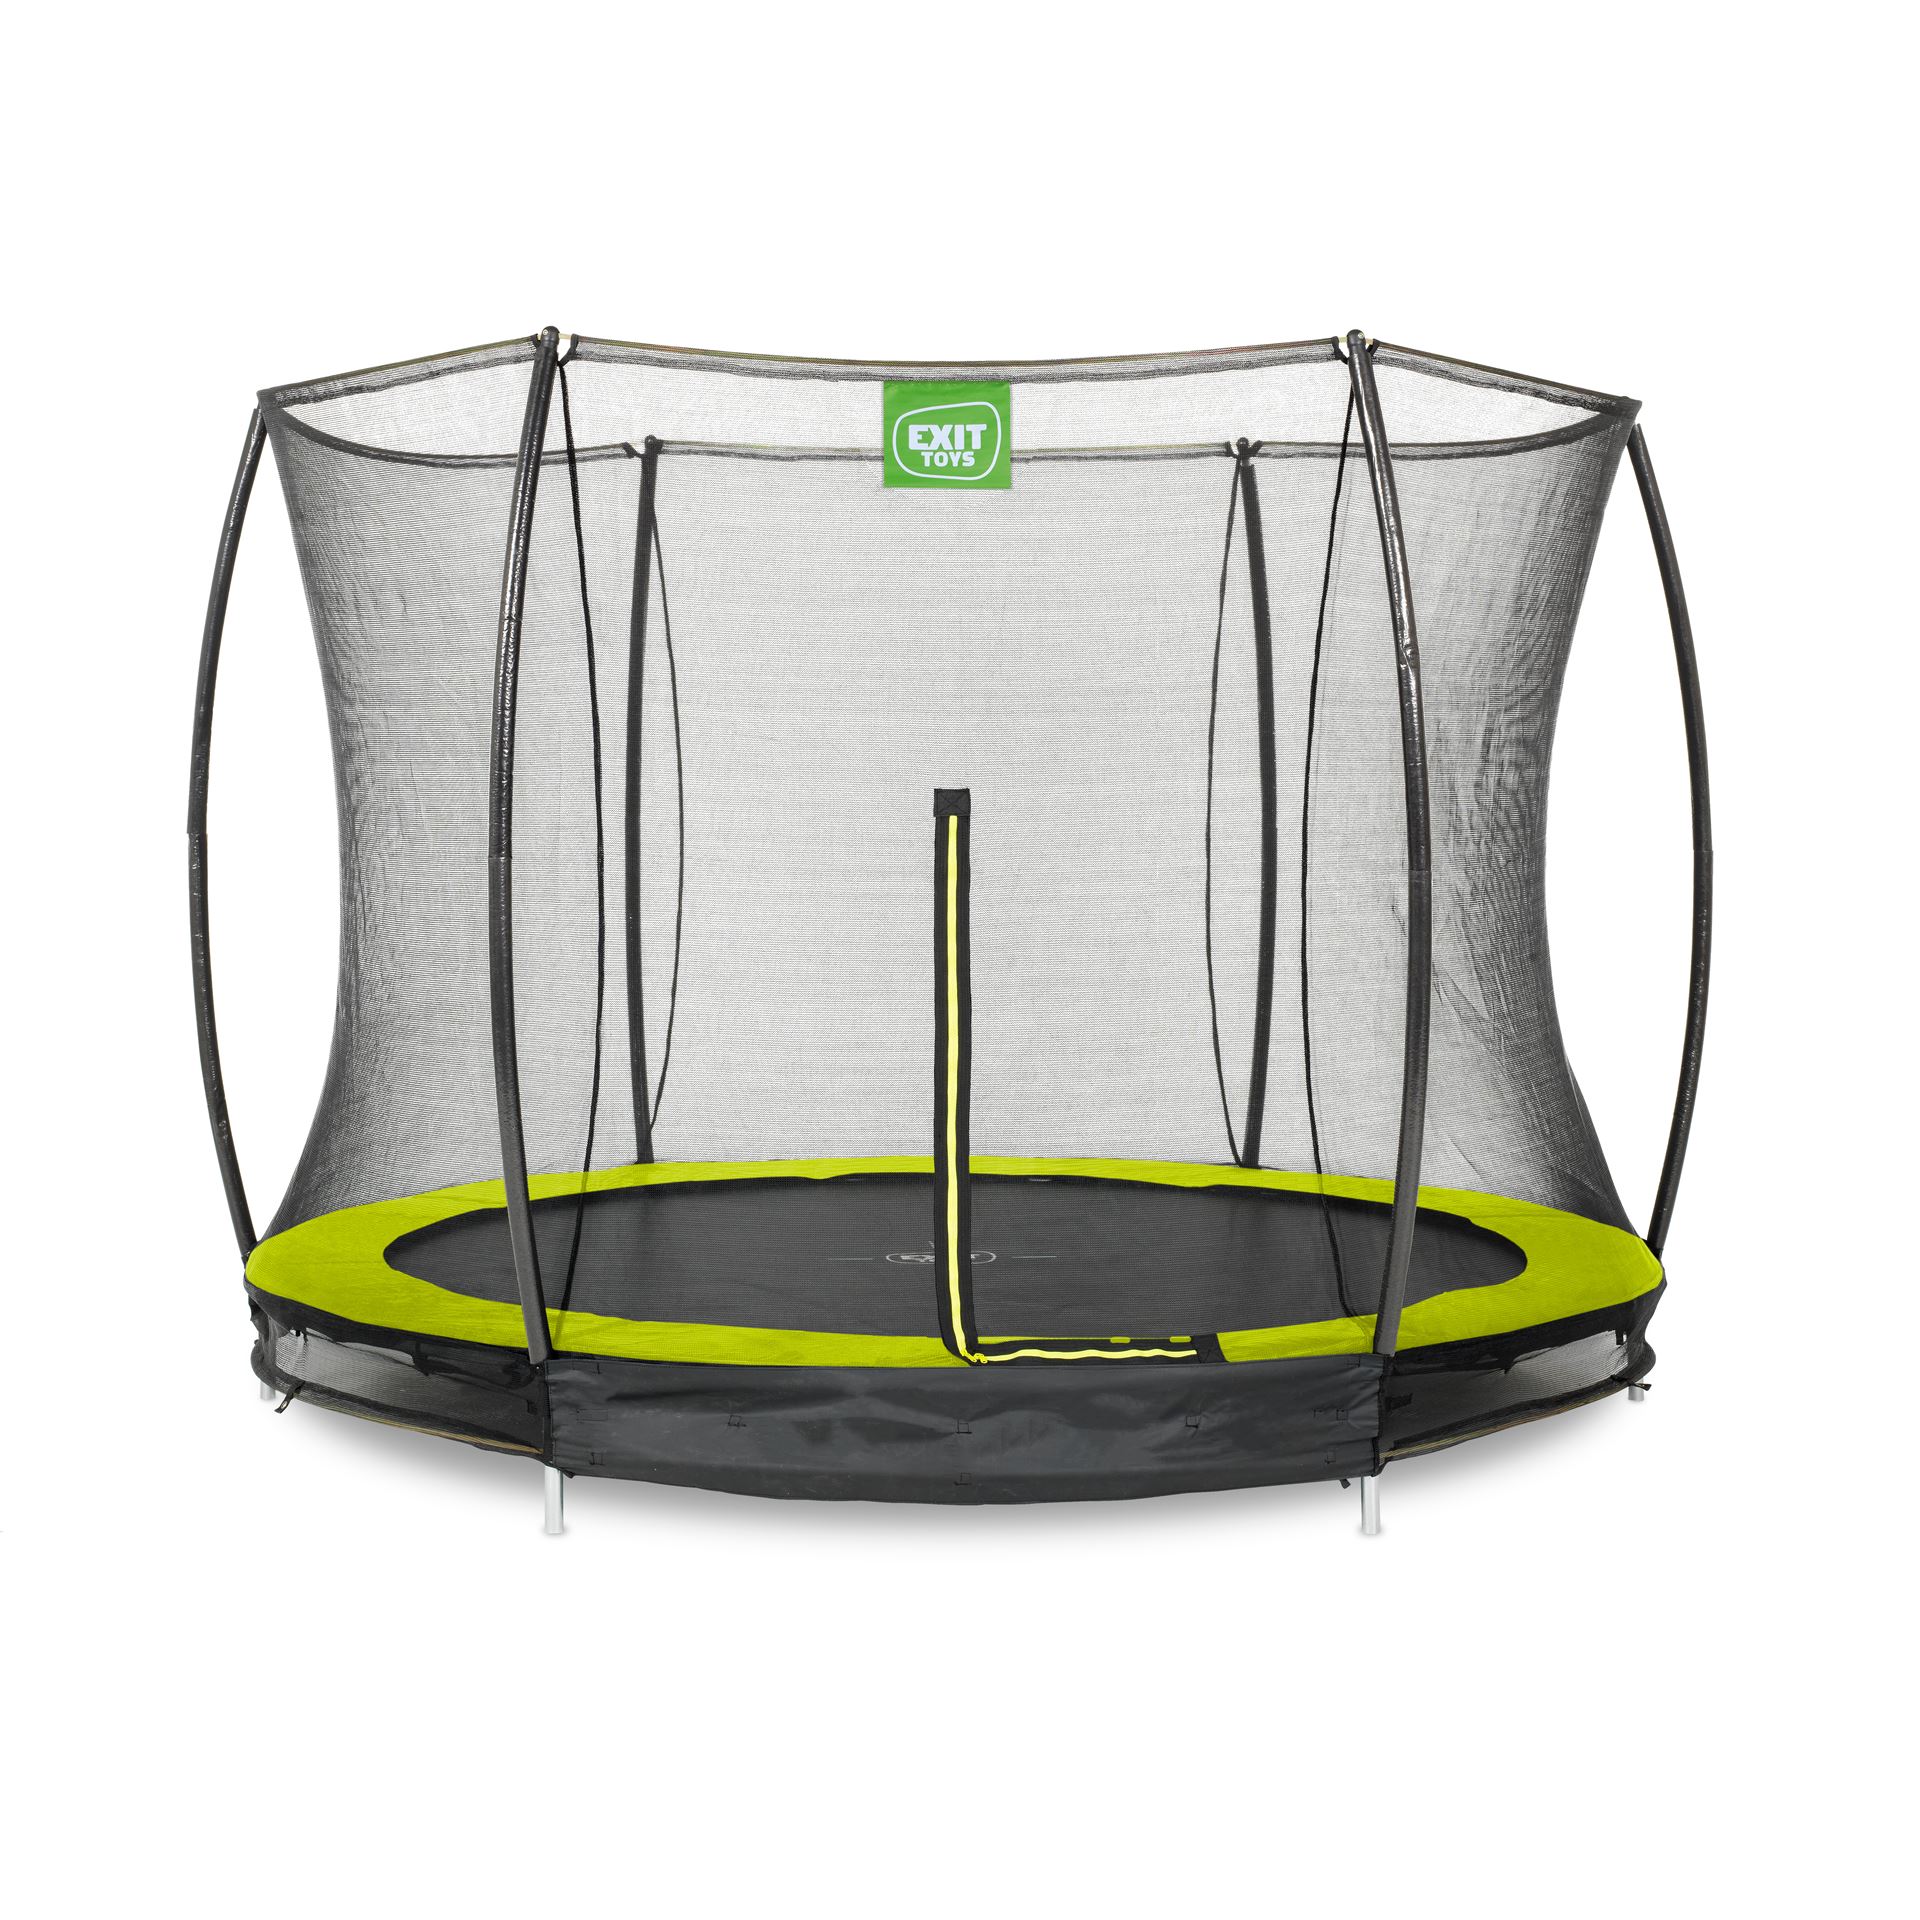 EXIT-Silhouette-inground-trampoline-305cm-met-veiligheidsnet-groen